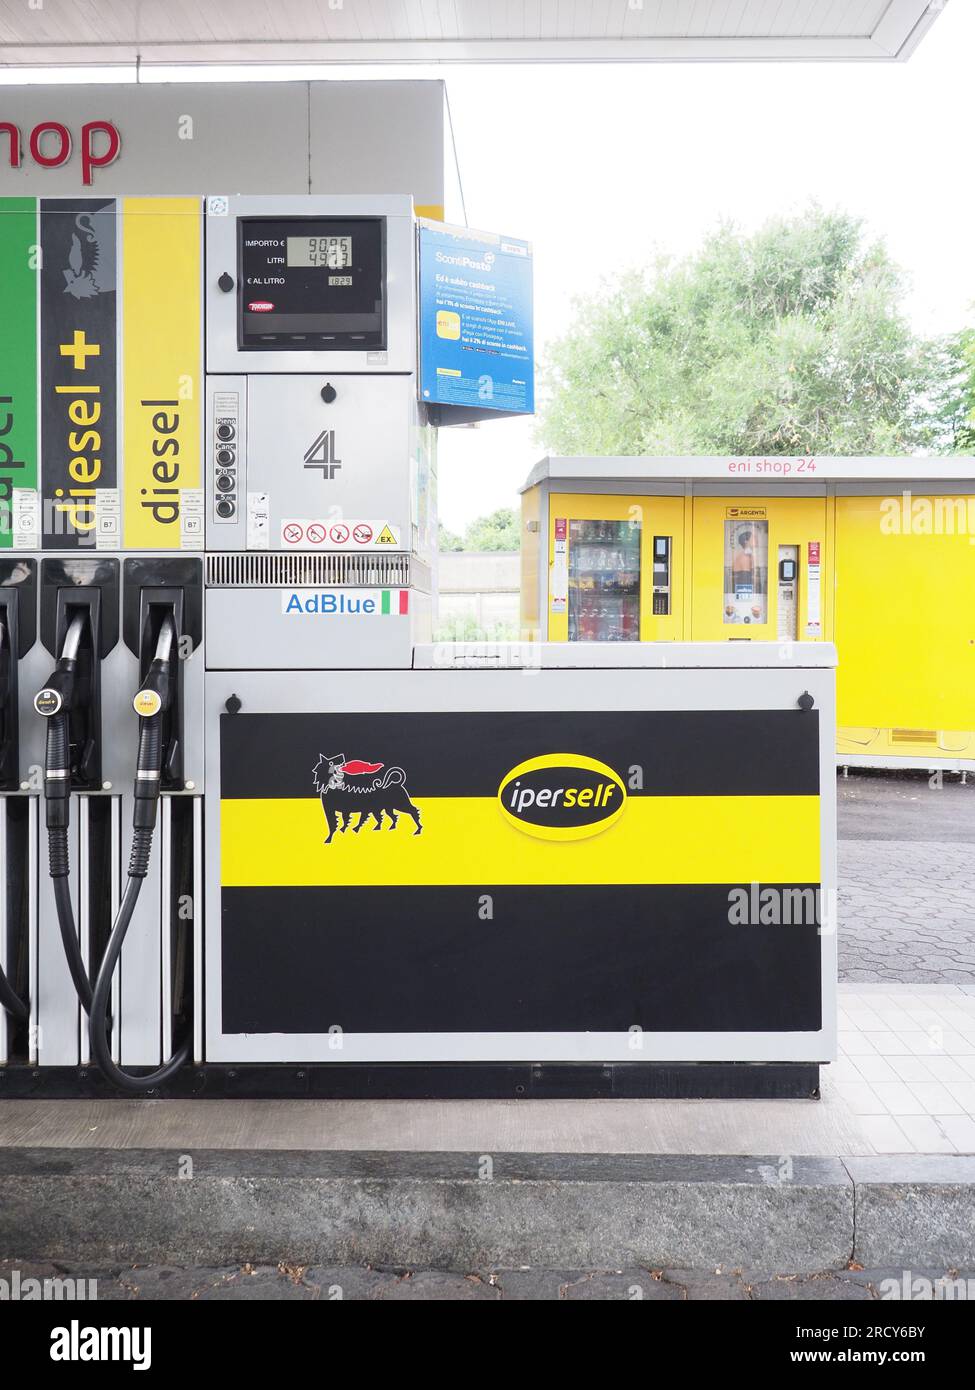 Agip petrol pump immagini e fotografie stock ad alta risoluzione - Alamy